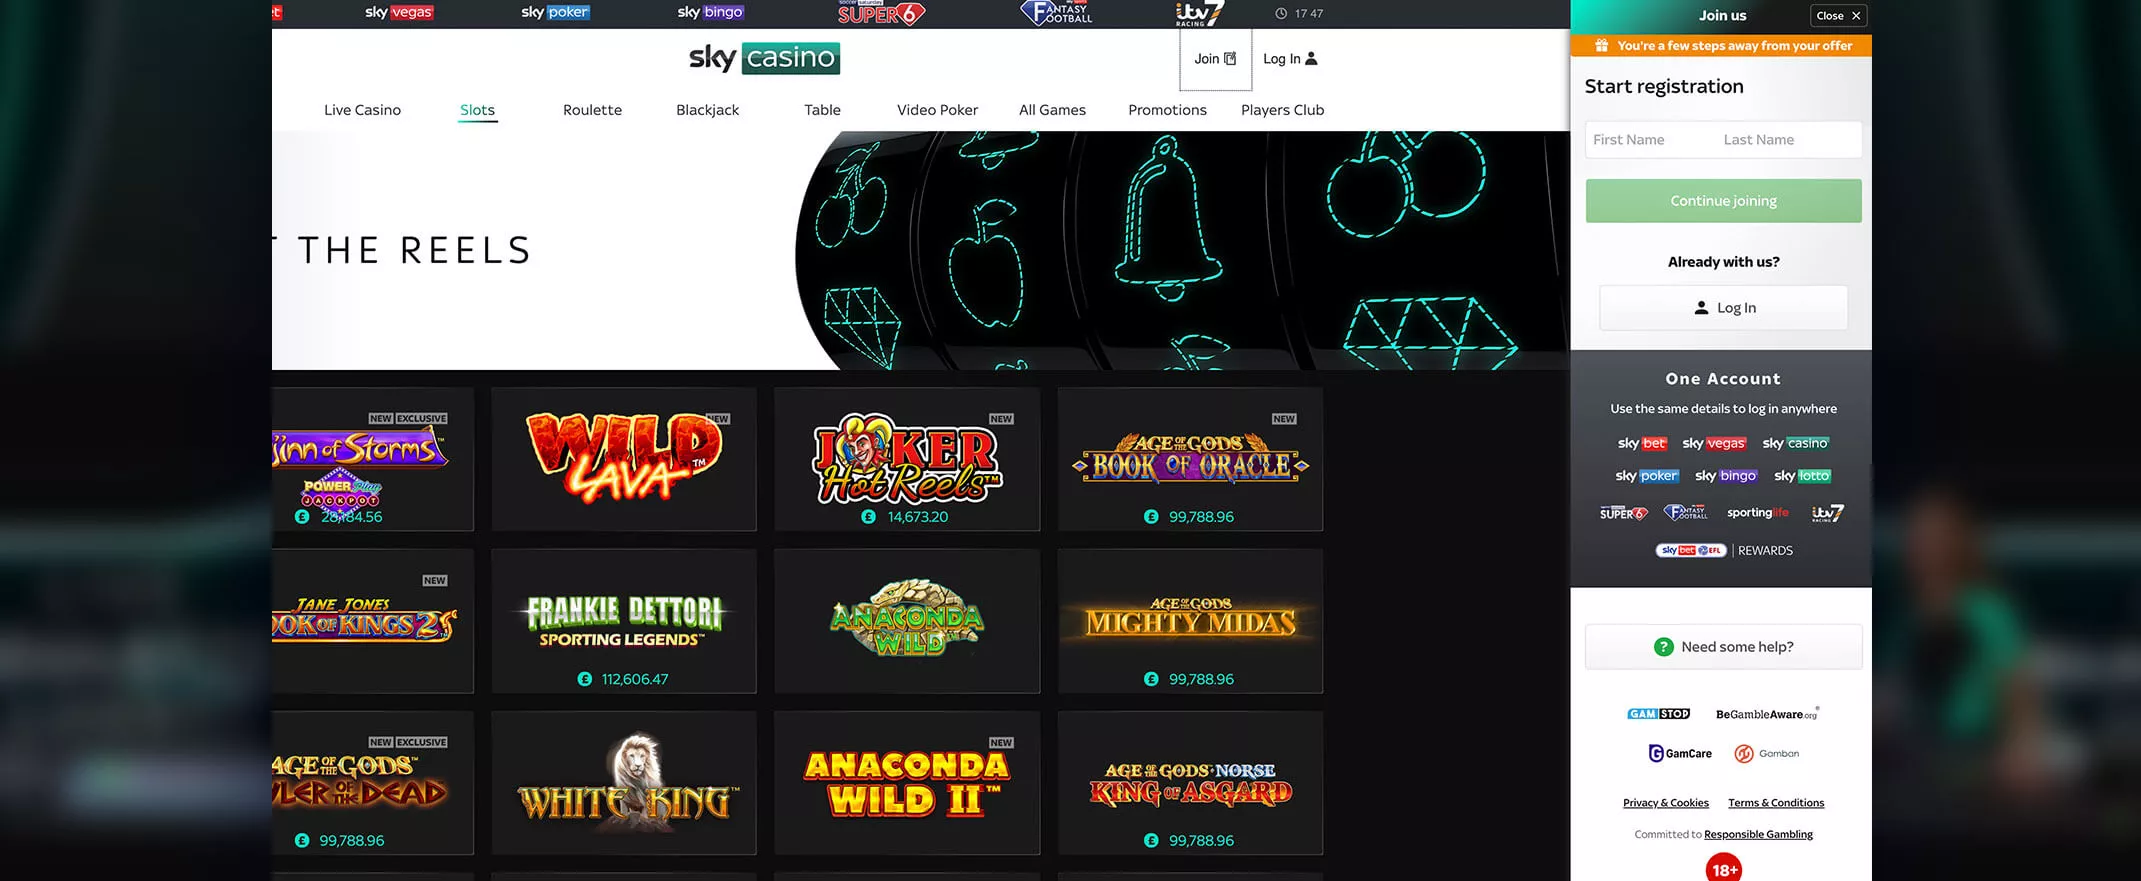 Sky Casino screenshot of the registration process